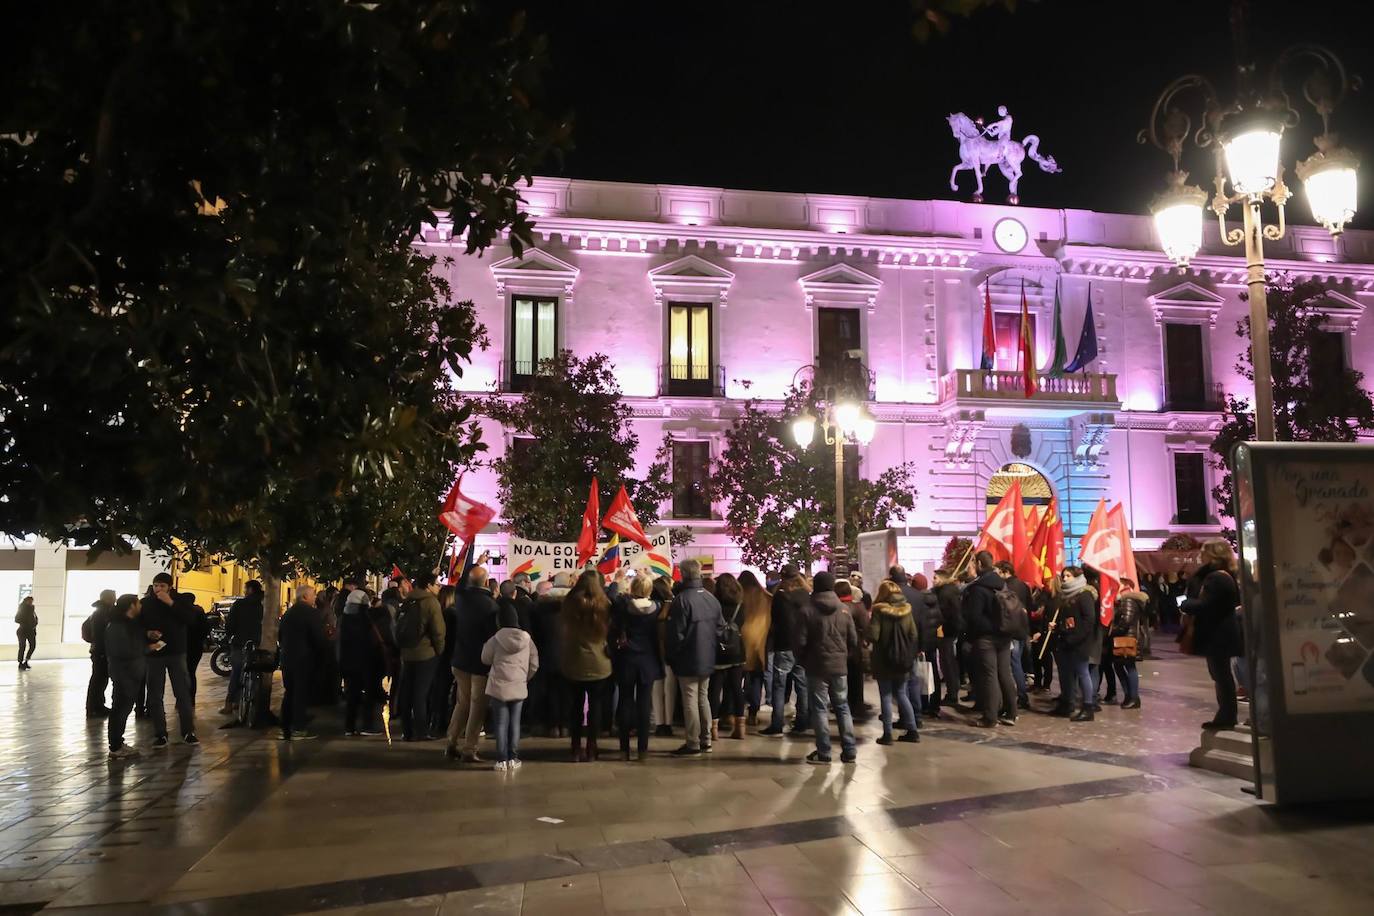 Marcha en Granada para pedir la renuncia de la presidenta interina Jeanine Áñez y el retorno del líder Morales